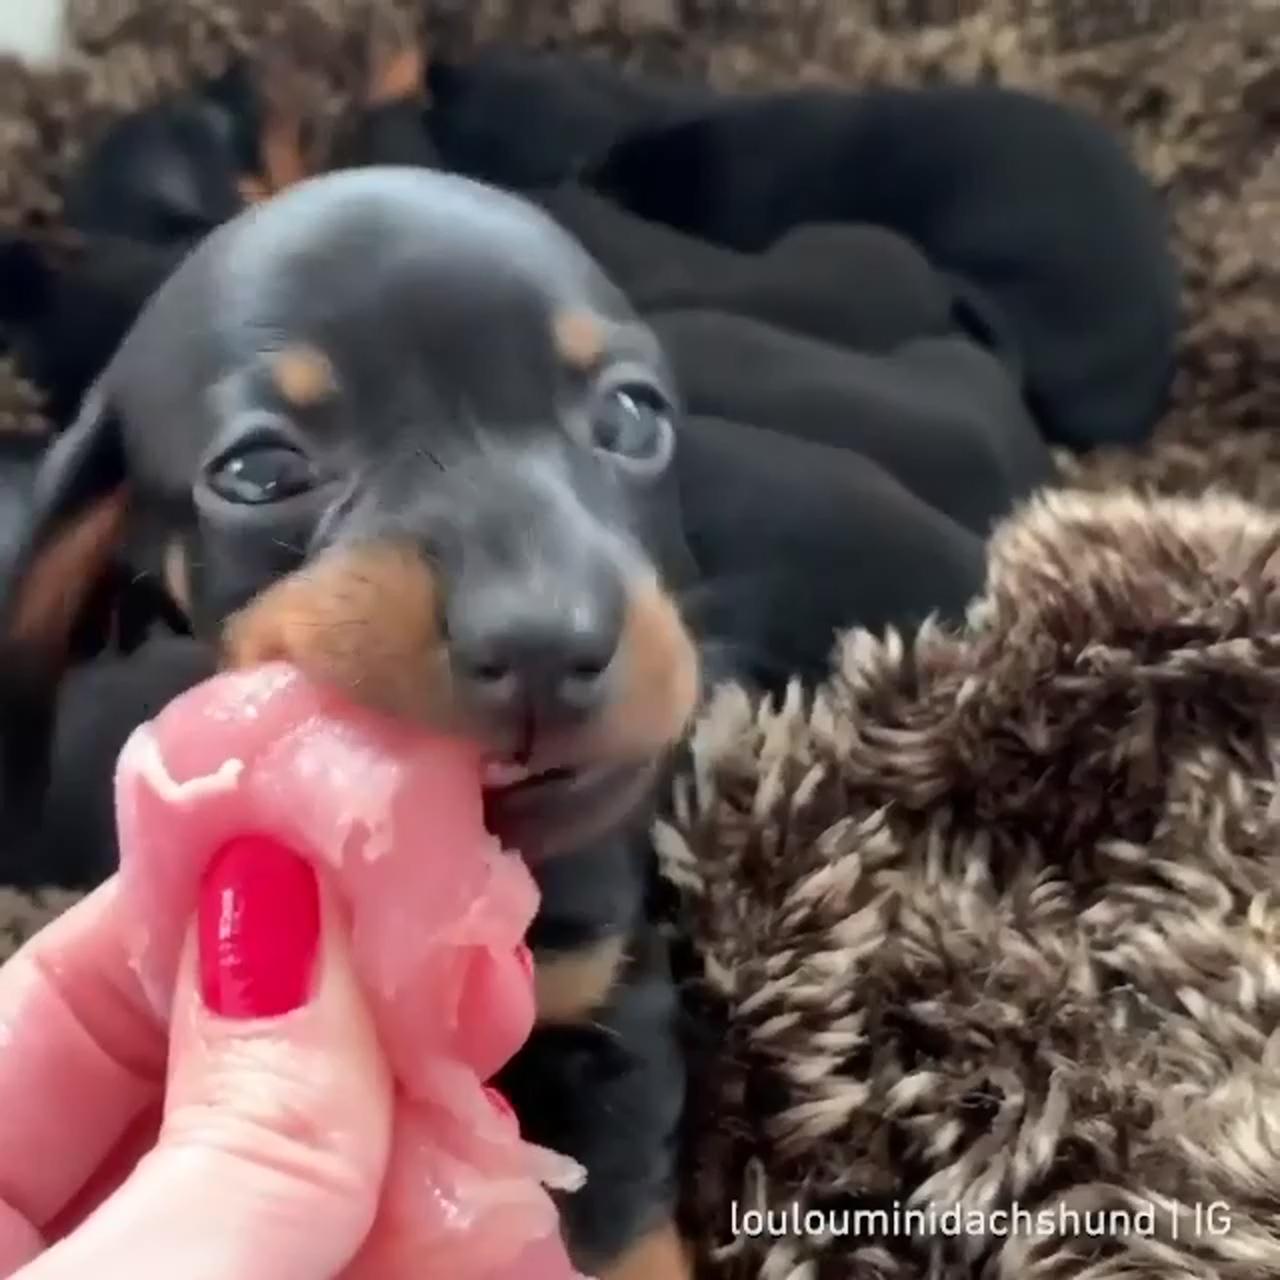 Smol pup big chomps; super cute puppies